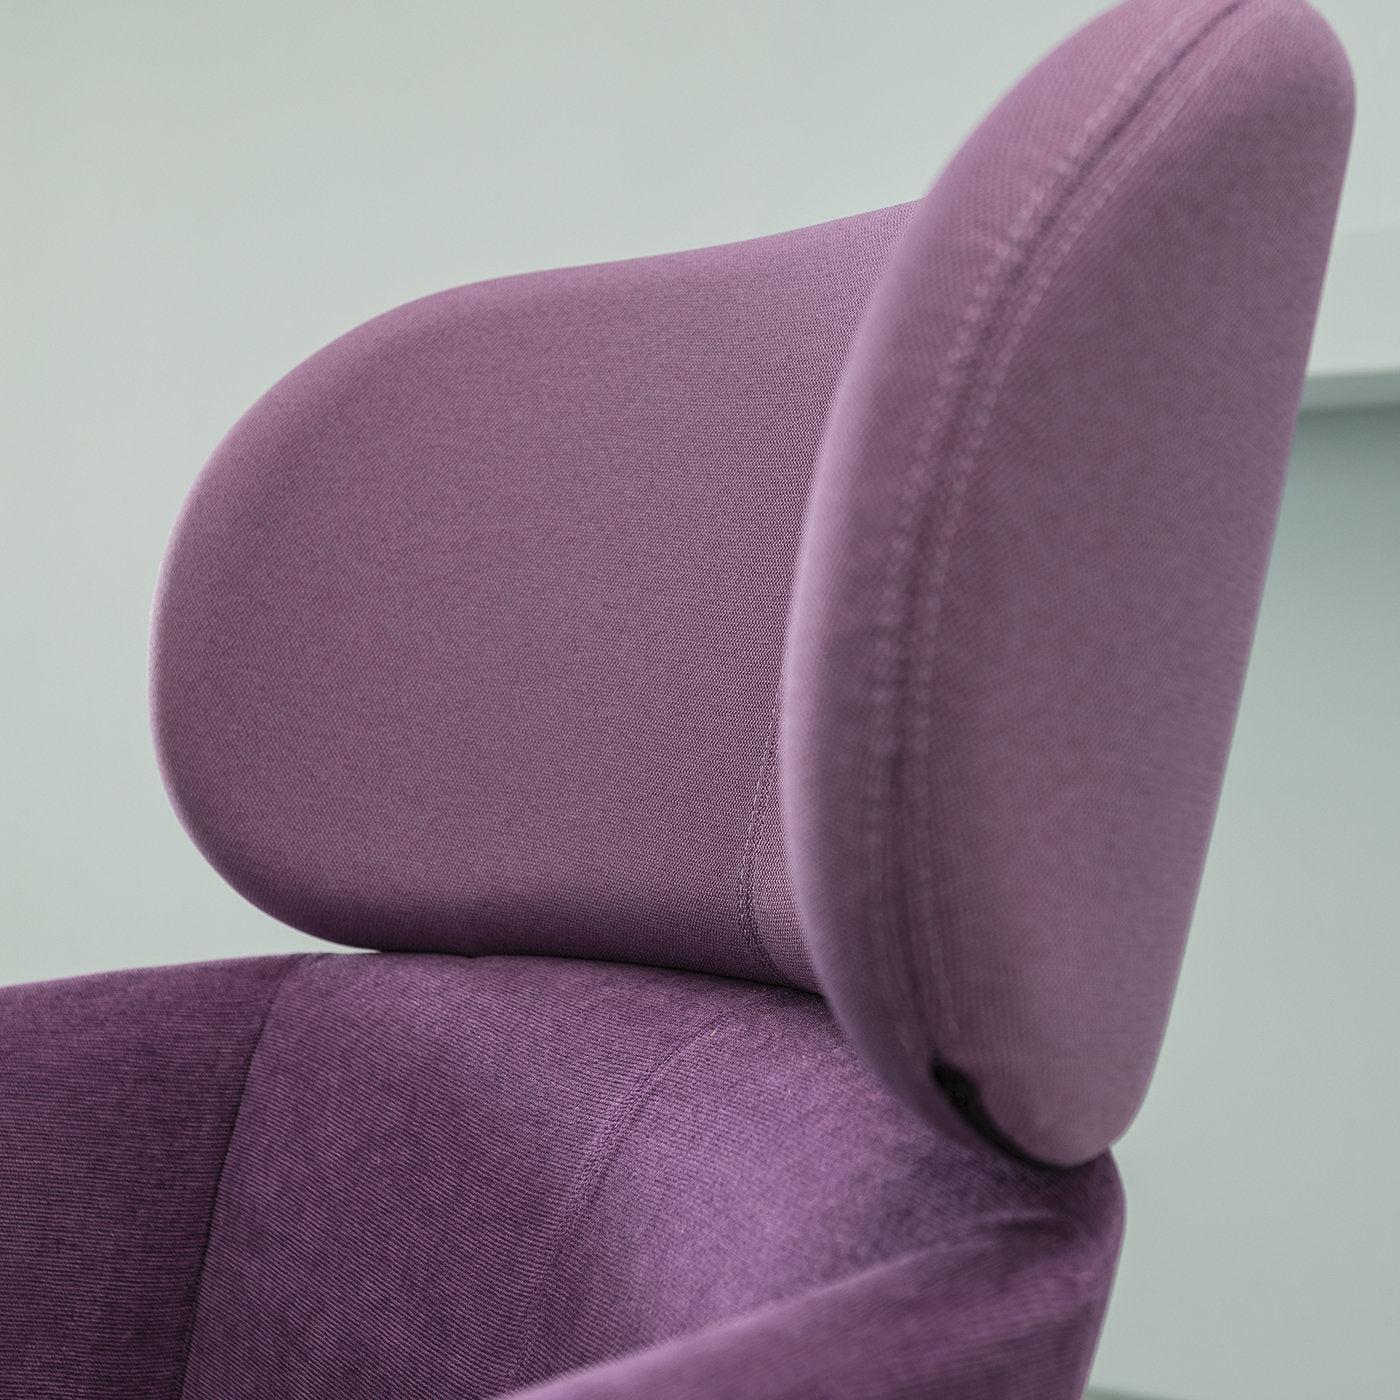 Balù XL Lilac Chair By Emilio Nanni - Alternative view 2